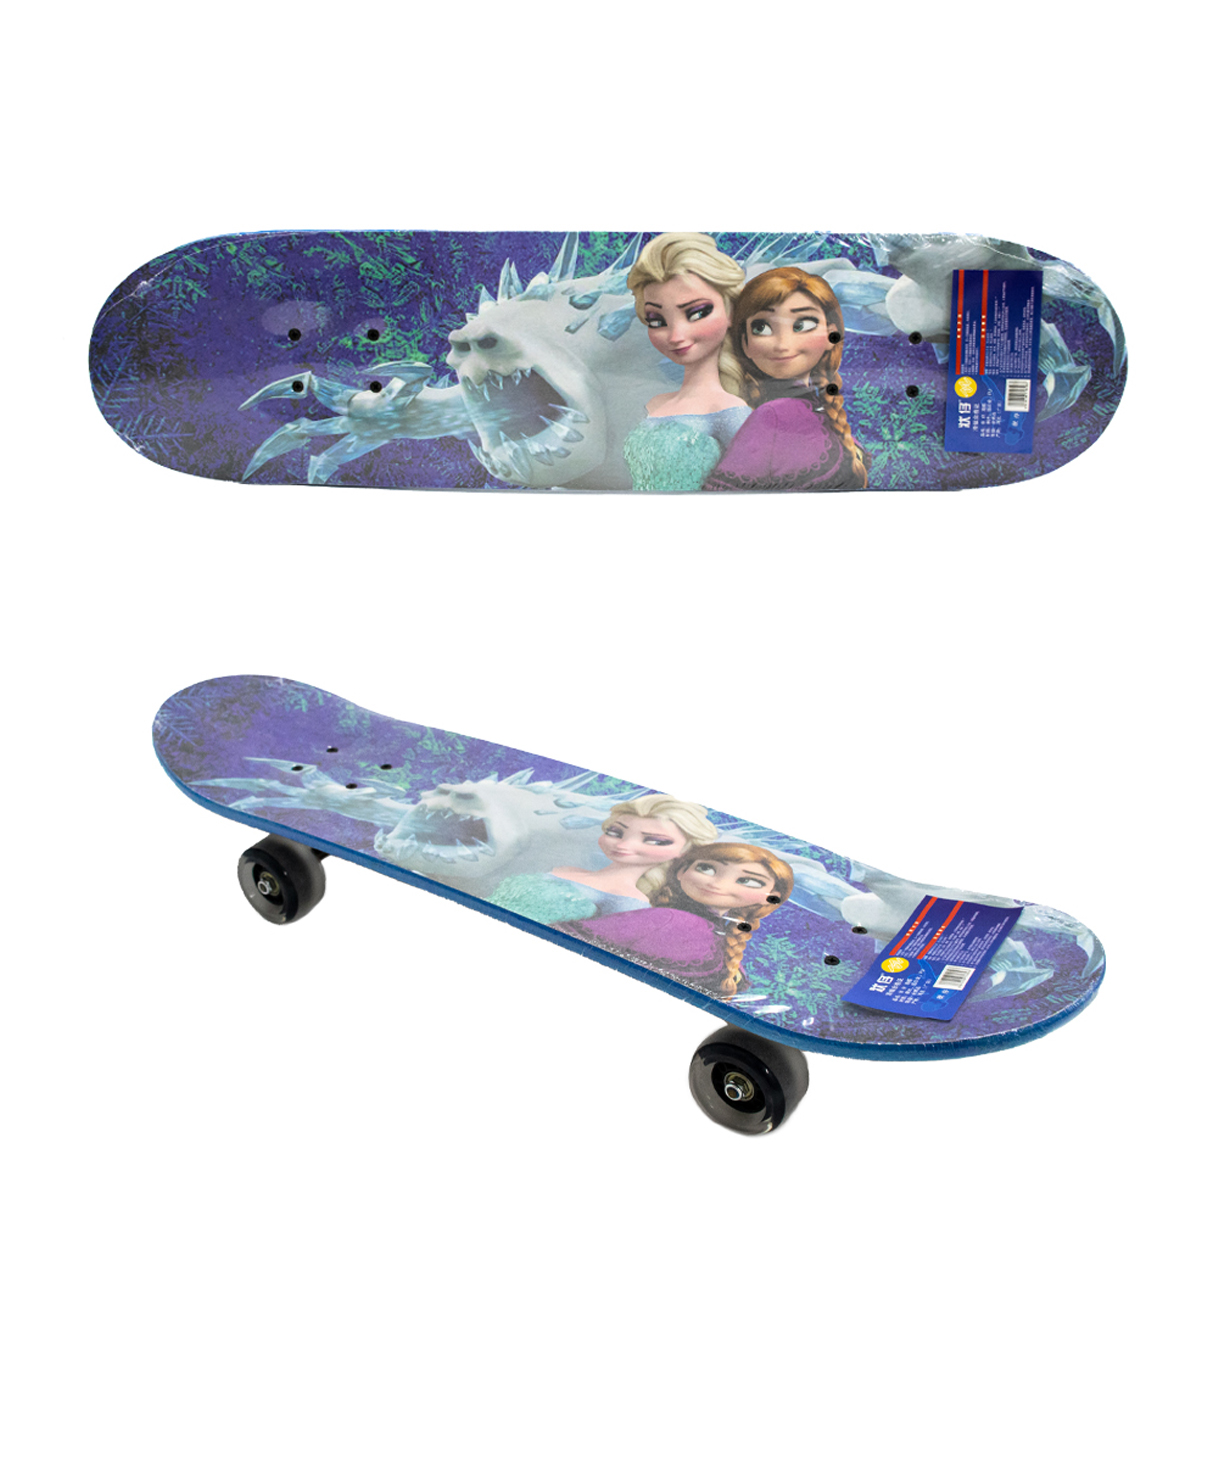 Wooden skateboard